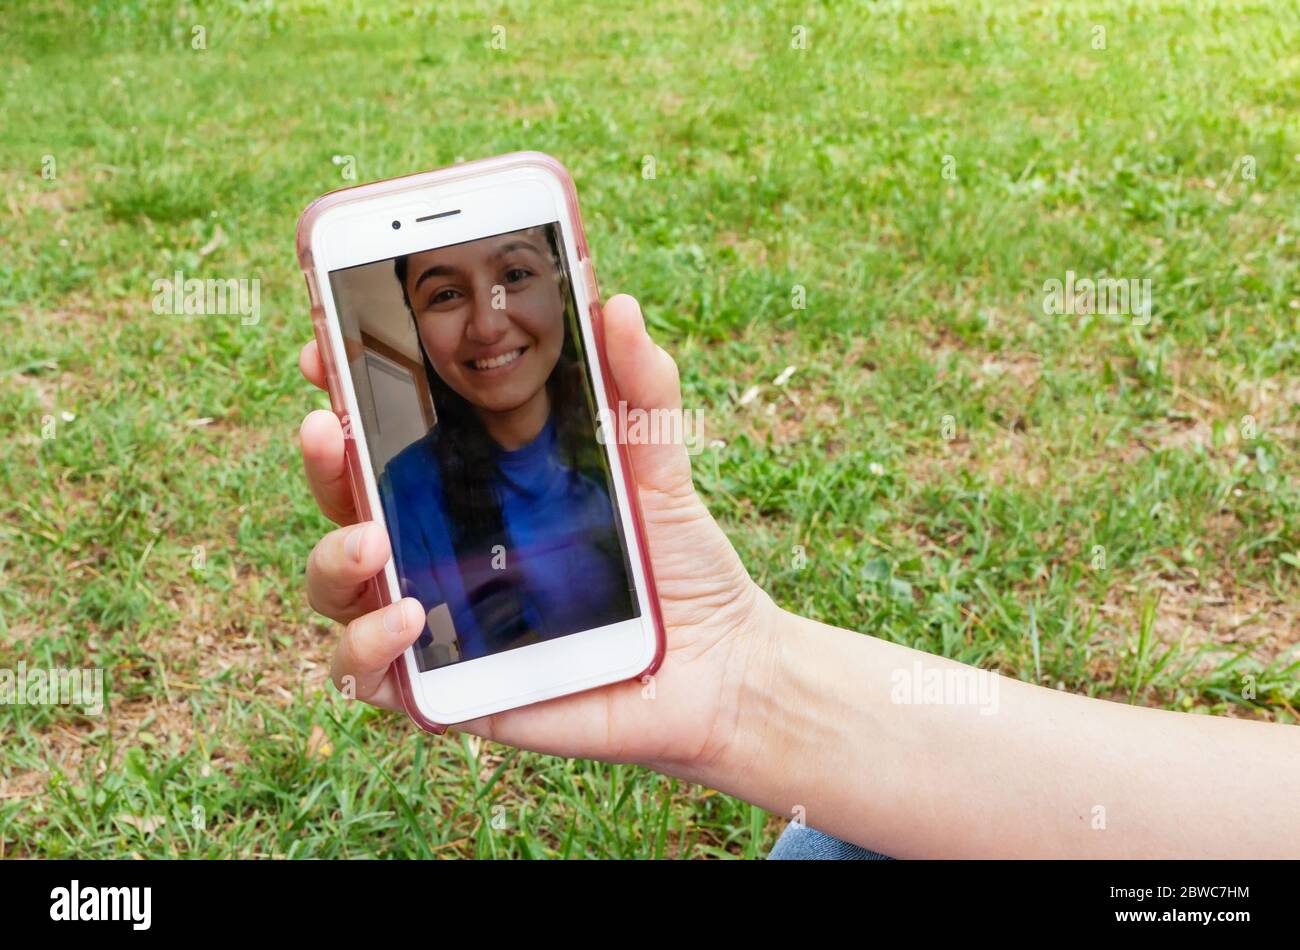 Gros plan d'un smartphone lors d'un appel vidéo avec une jeune fille souriante. Photo prise à l'extérieur sur une pelouse verte au printemps. Banque D'Images